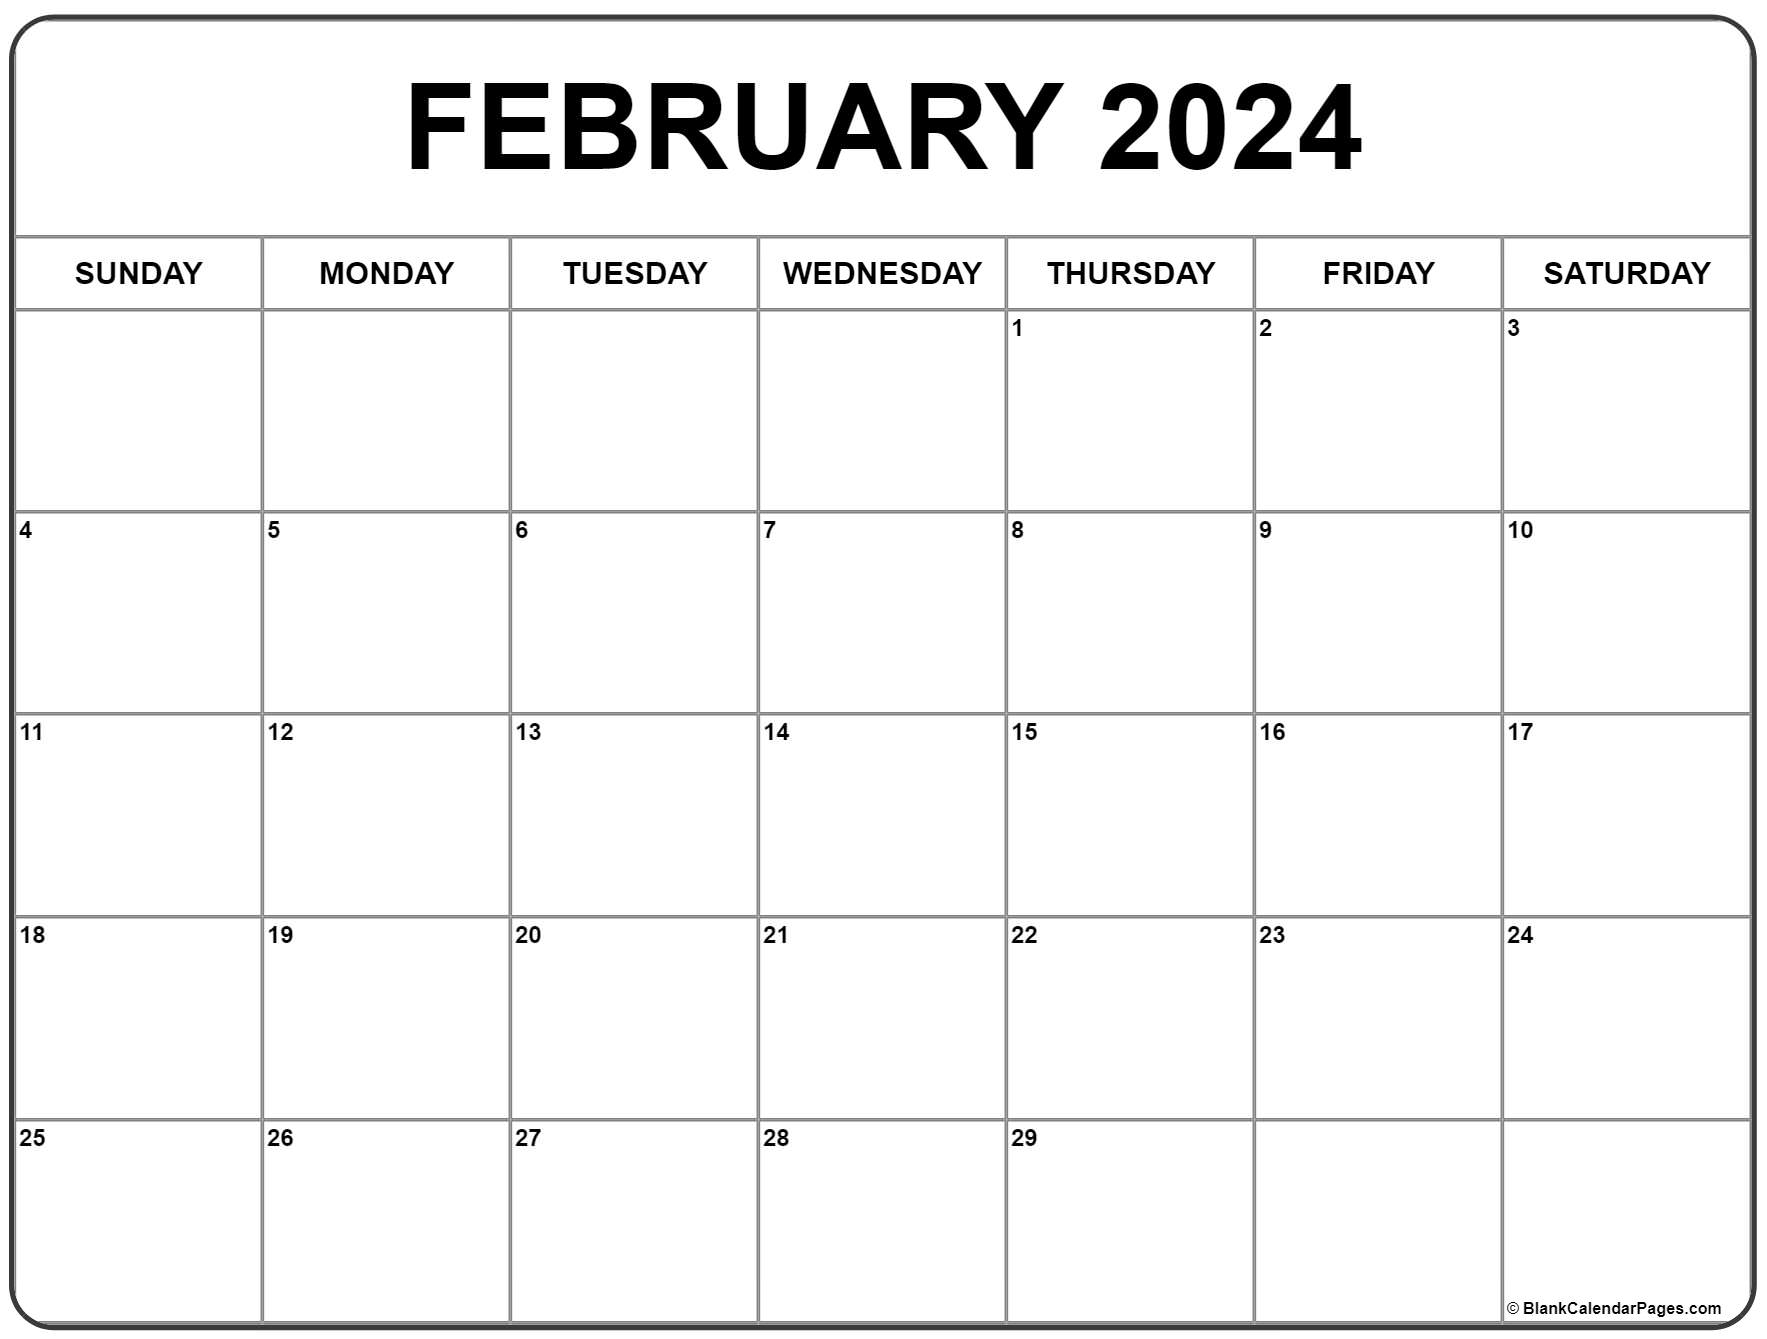 February 2024 Calendar | Free Printable Calendar for 2024 Calendar February Printable